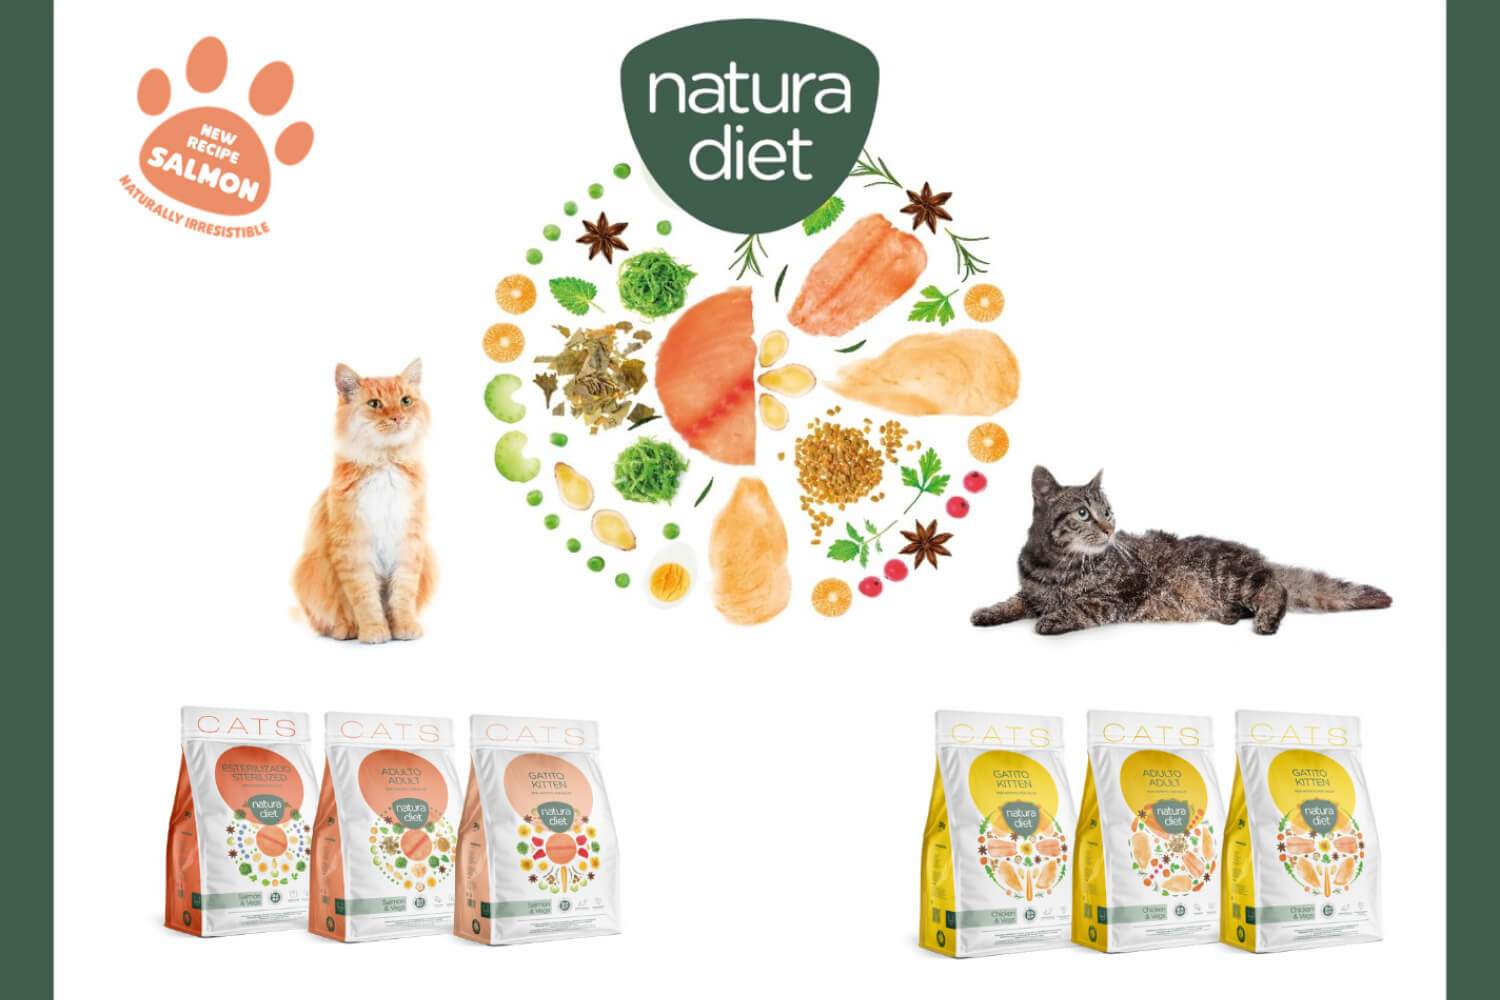 Η σειρά Natura diet Cats εμπλουτίζεται!